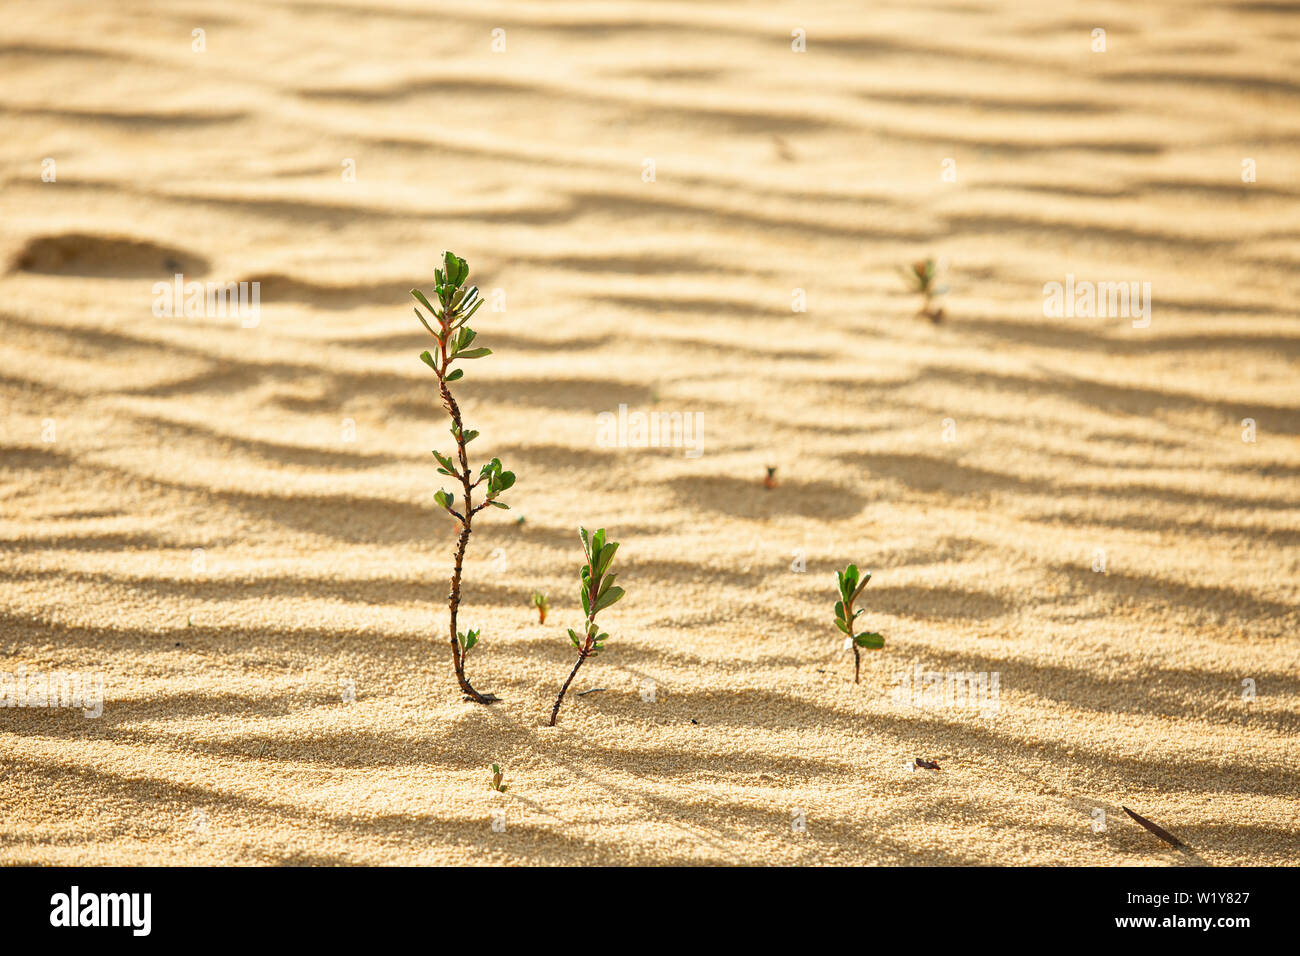 Junge grüne genügsame Pflanze sprießen aus dem Sand in einem goldenen Hintergrundbeleuchtung und trowing Schatten Stockfoto